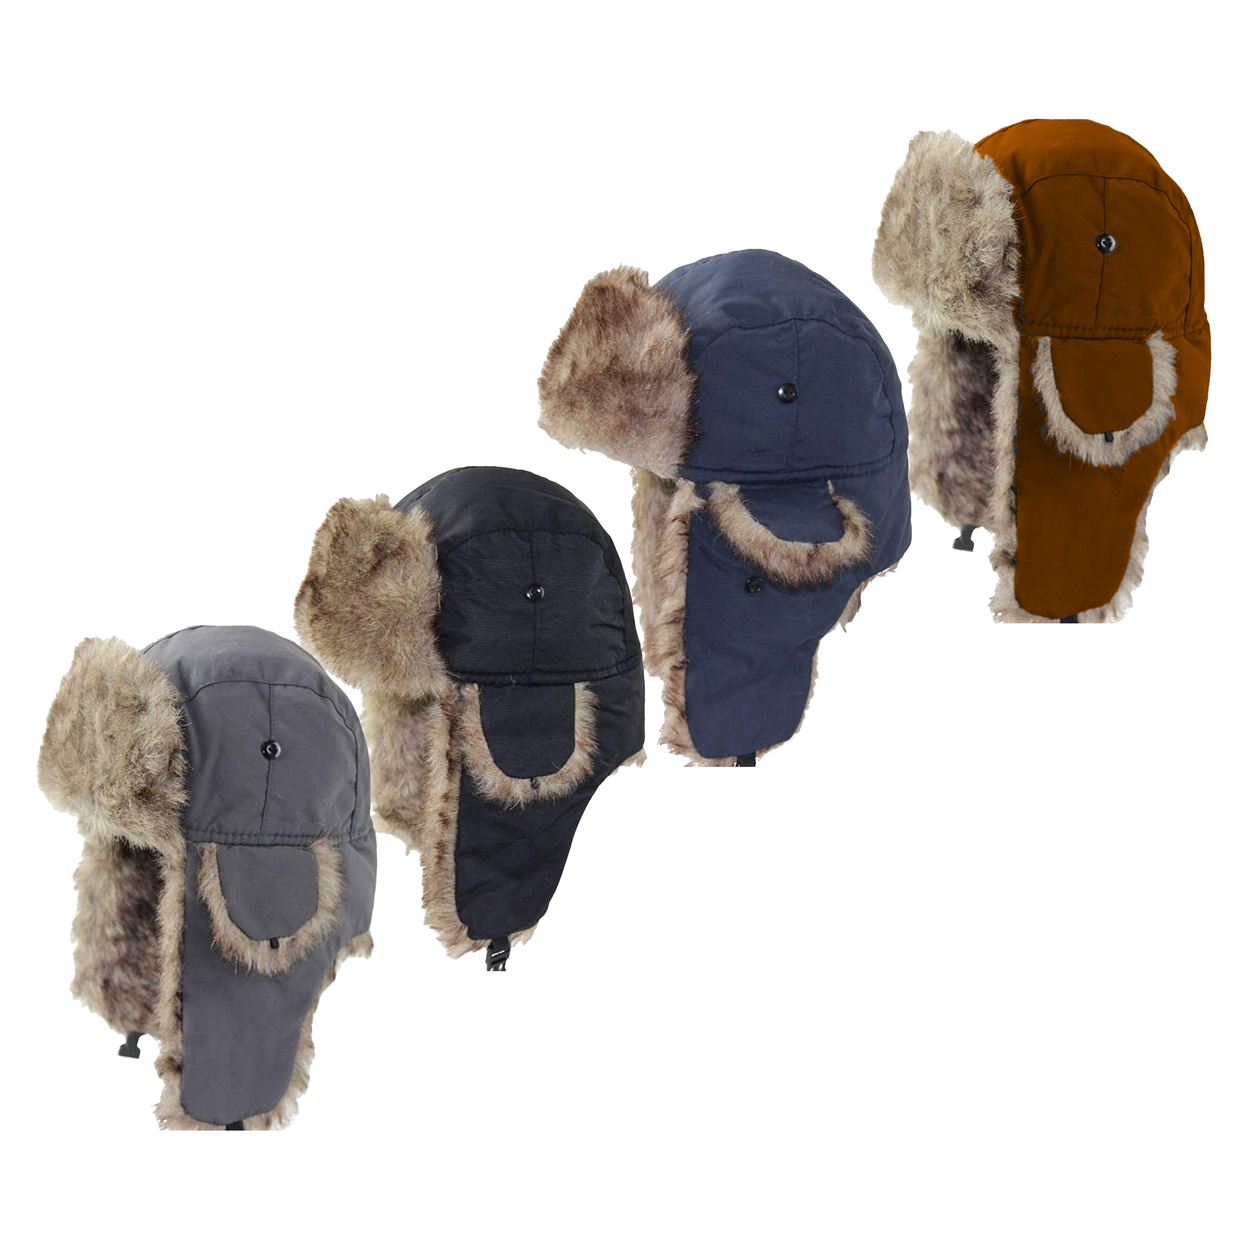 Men's Winter Warm Soft Cozy Russian Ushanka Faux Fur Hat With Ear-Flaps - Grey